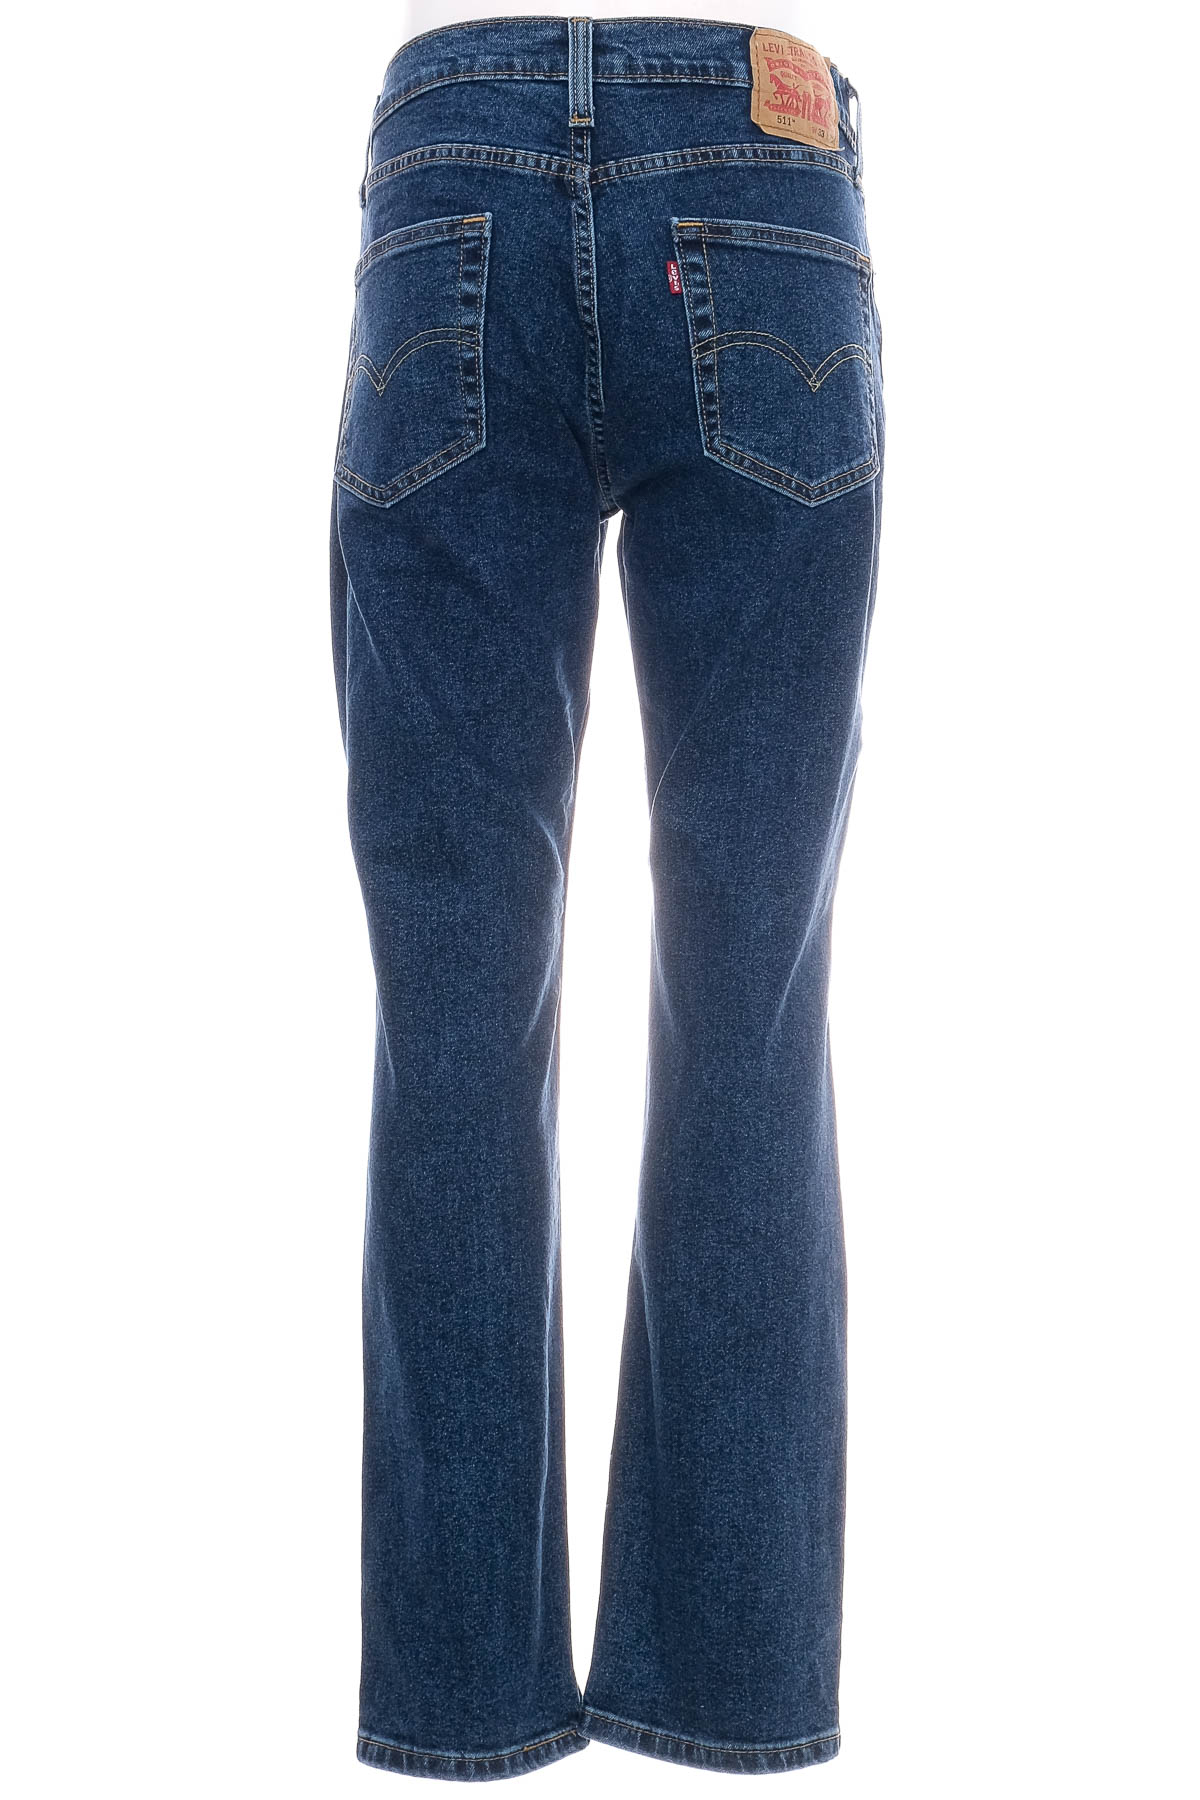 Men's jeans - LEVI'S - 1